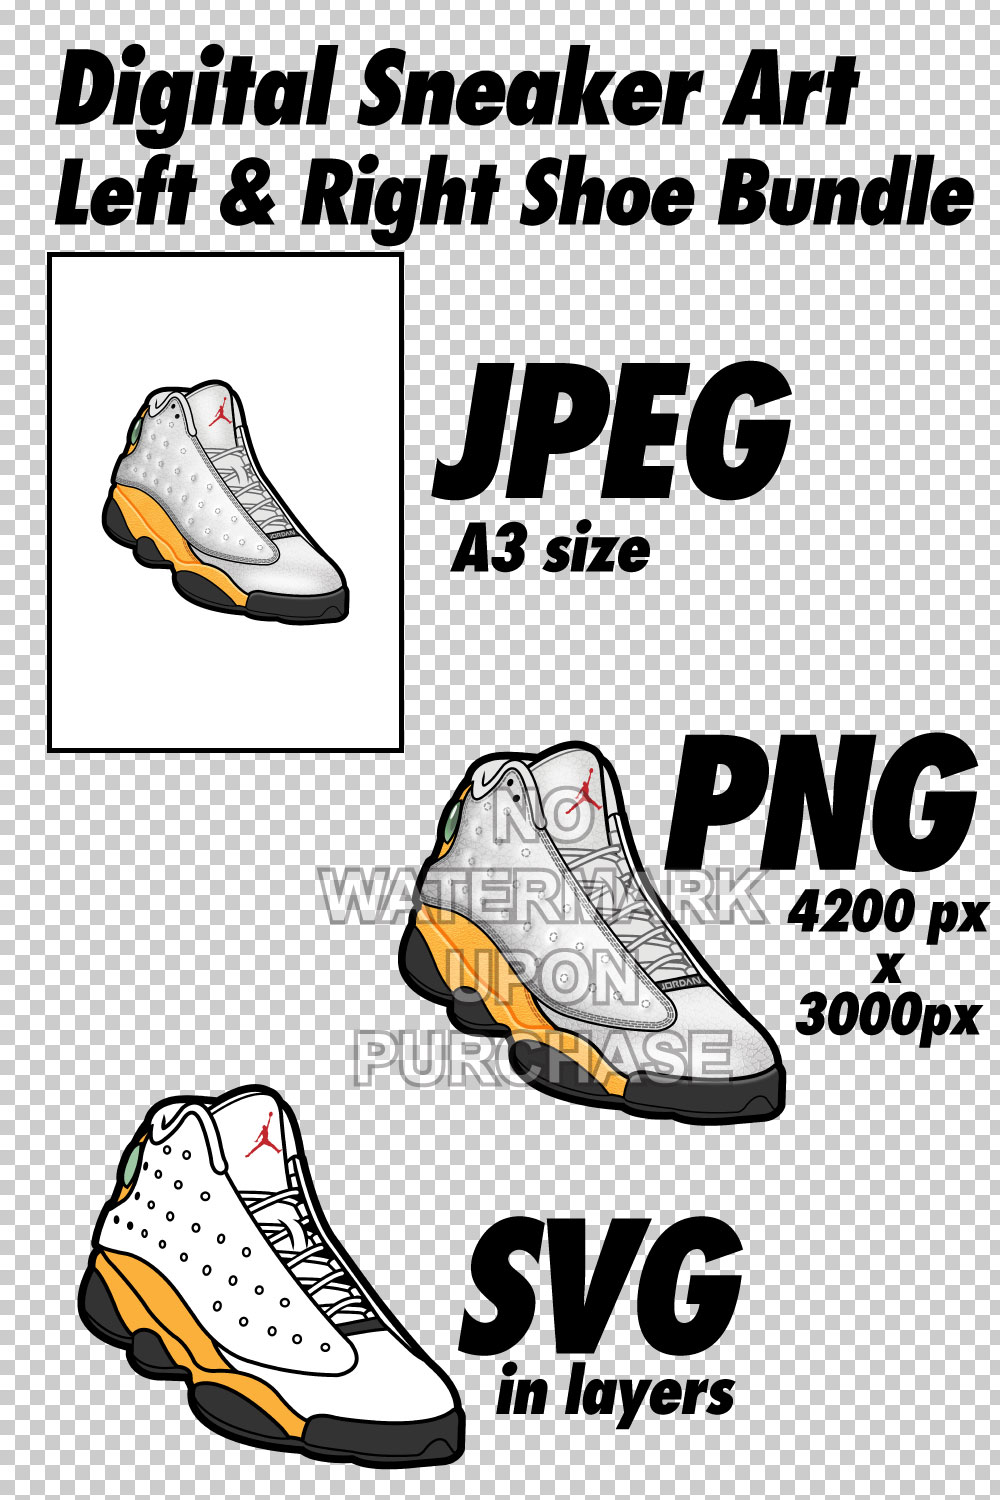 Air Jordan 13 Del Sol JPEG PNG SVG right & left shoe bundle pinterest preview image.